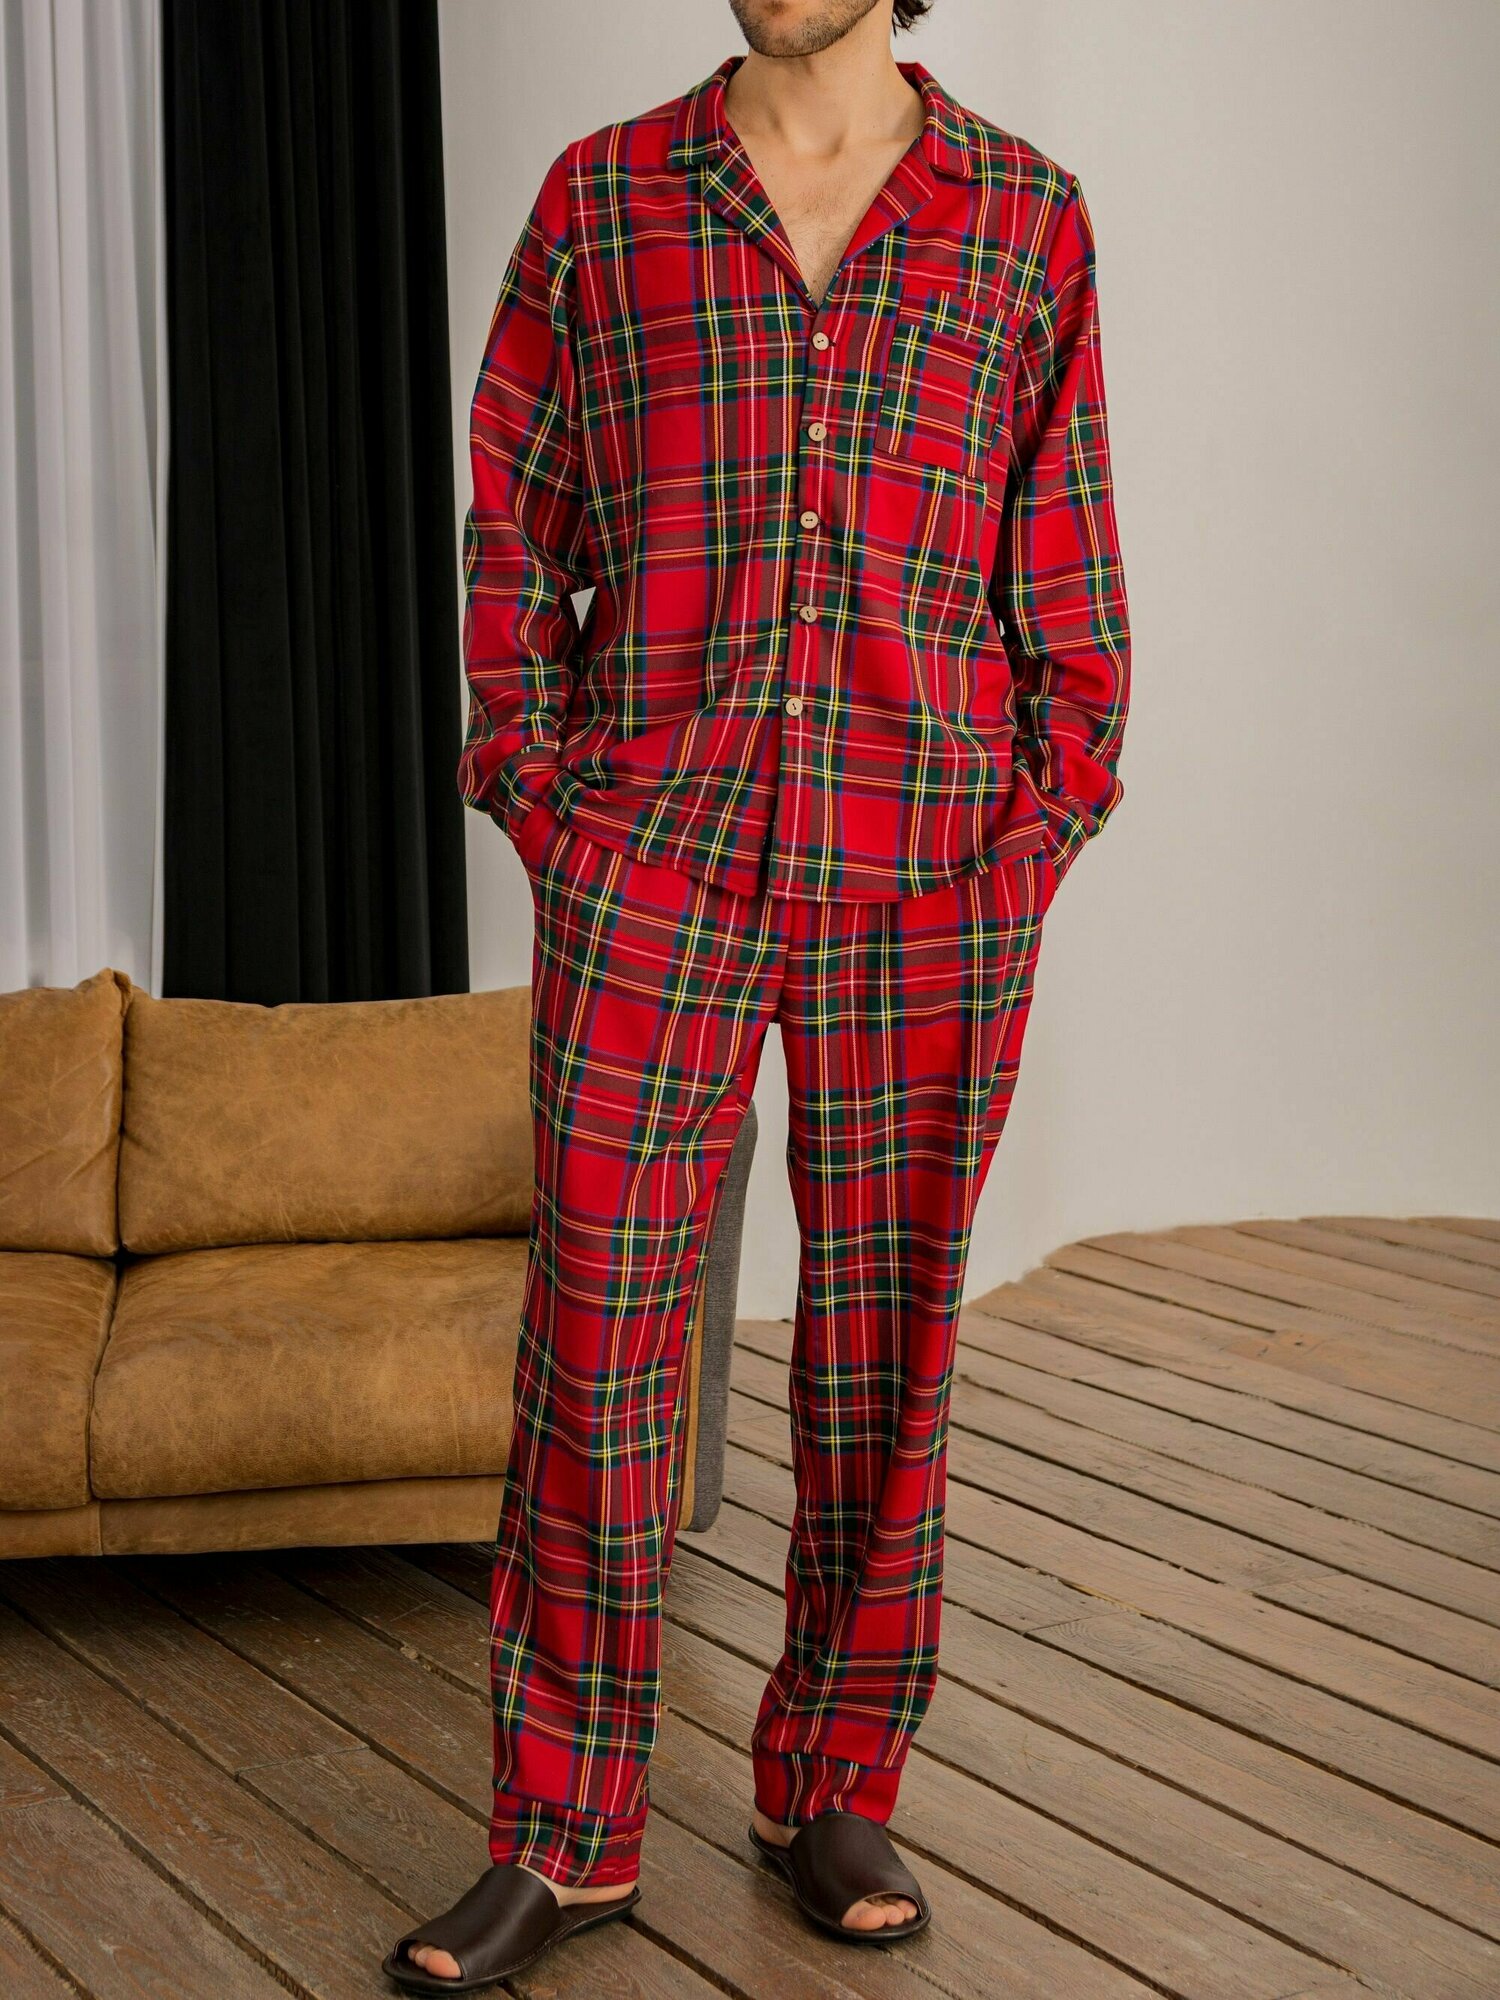 Пижама "Новогодняя мужская в клетку" от бренда Dintime, размер L - фотография № 3